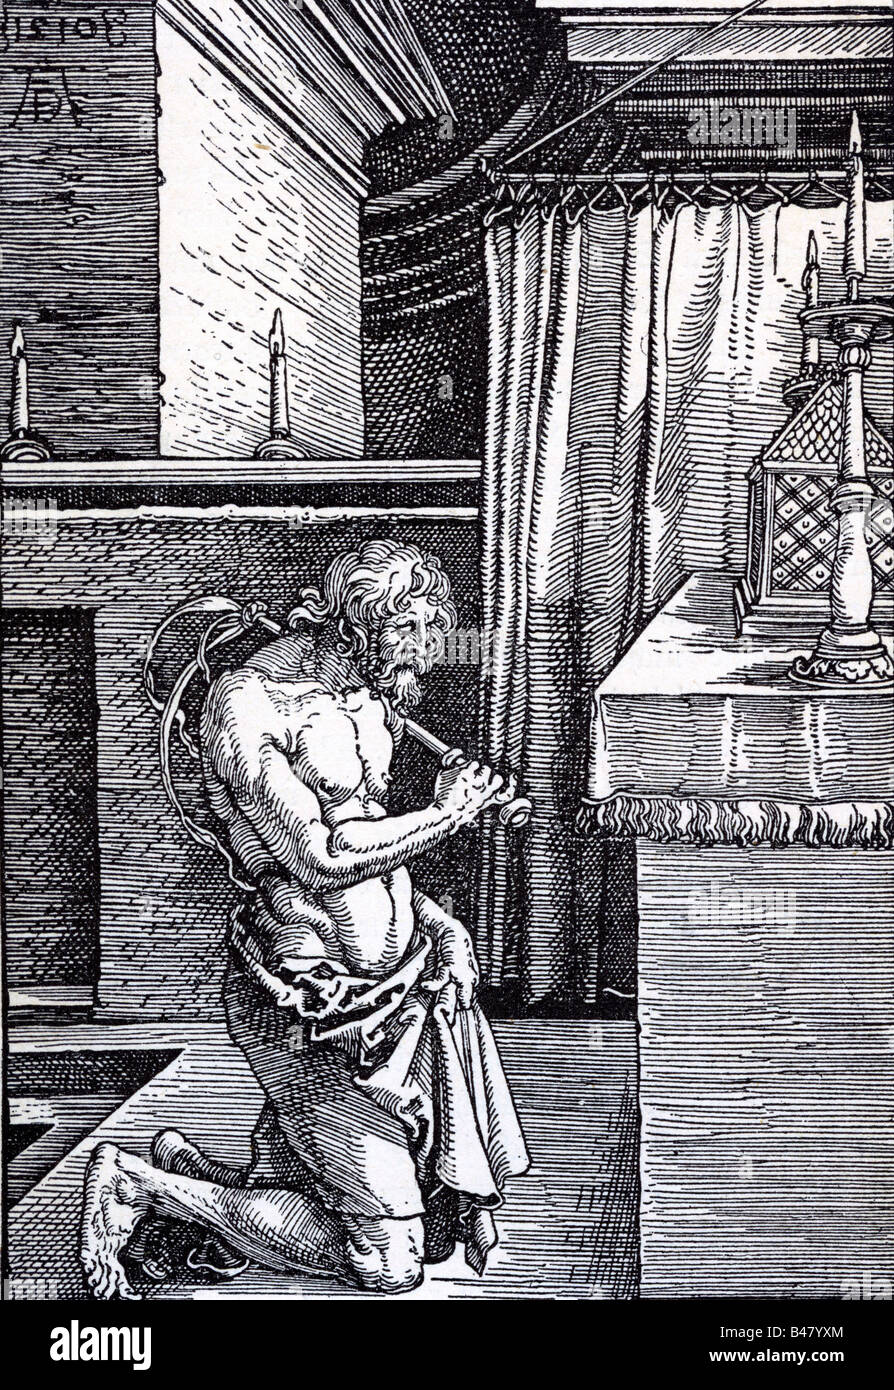 La religione, il cristianesimo, le sette, flagellants, egli stesso la fustigazione penitente, xilografia di Albrecht Dürer, 1510, artista del diritto d'autore non deve essere cancellata Foto Stock